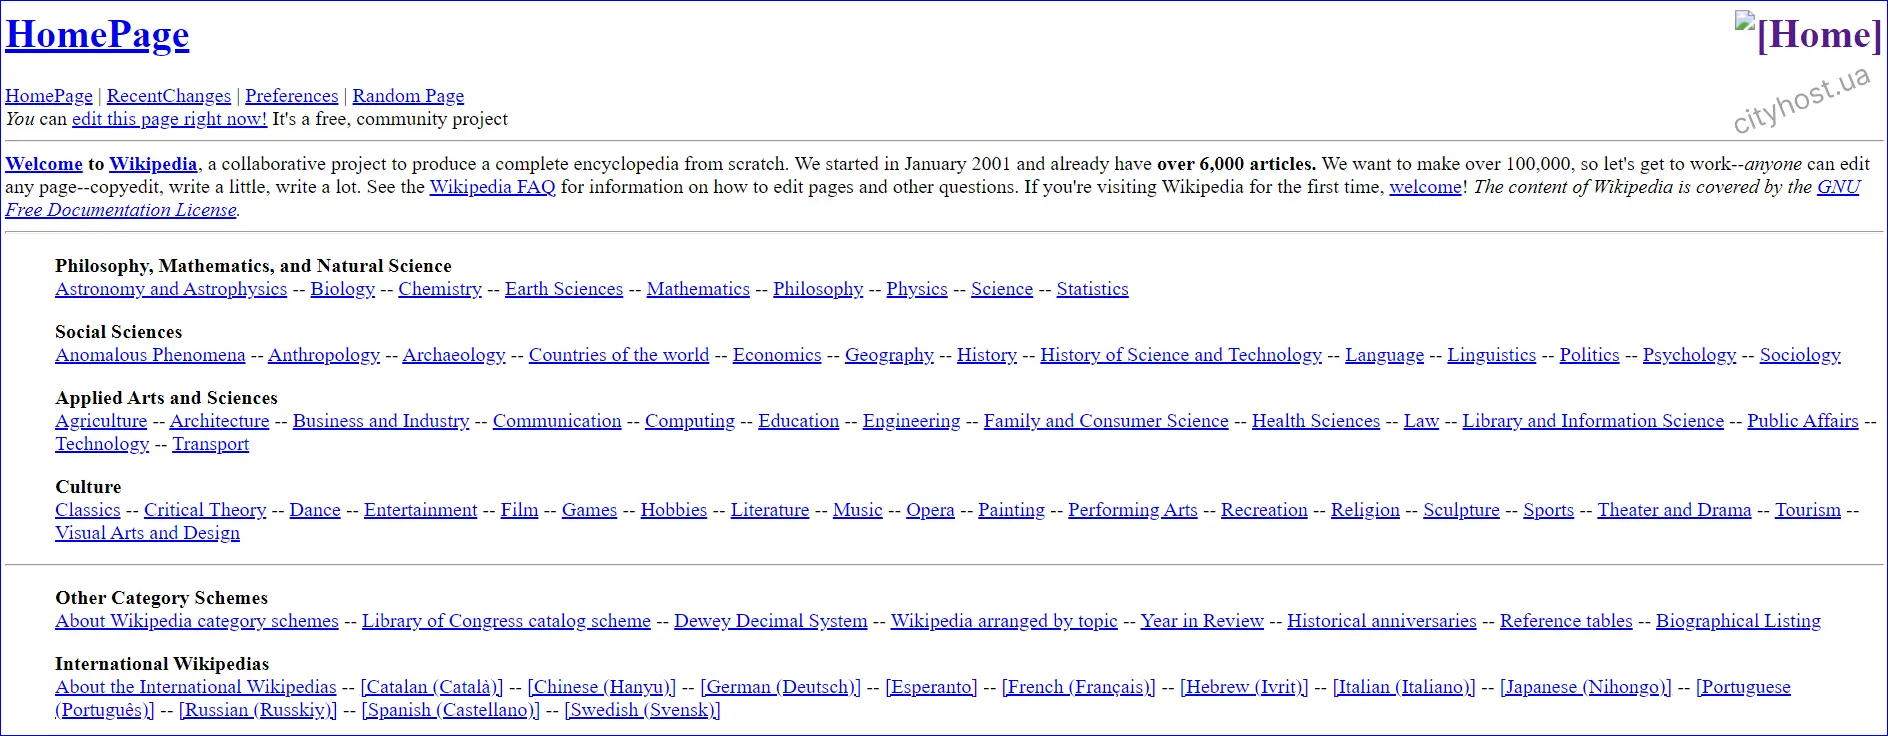 Вигляд головної сторінки Вікіпедії у 2001 році